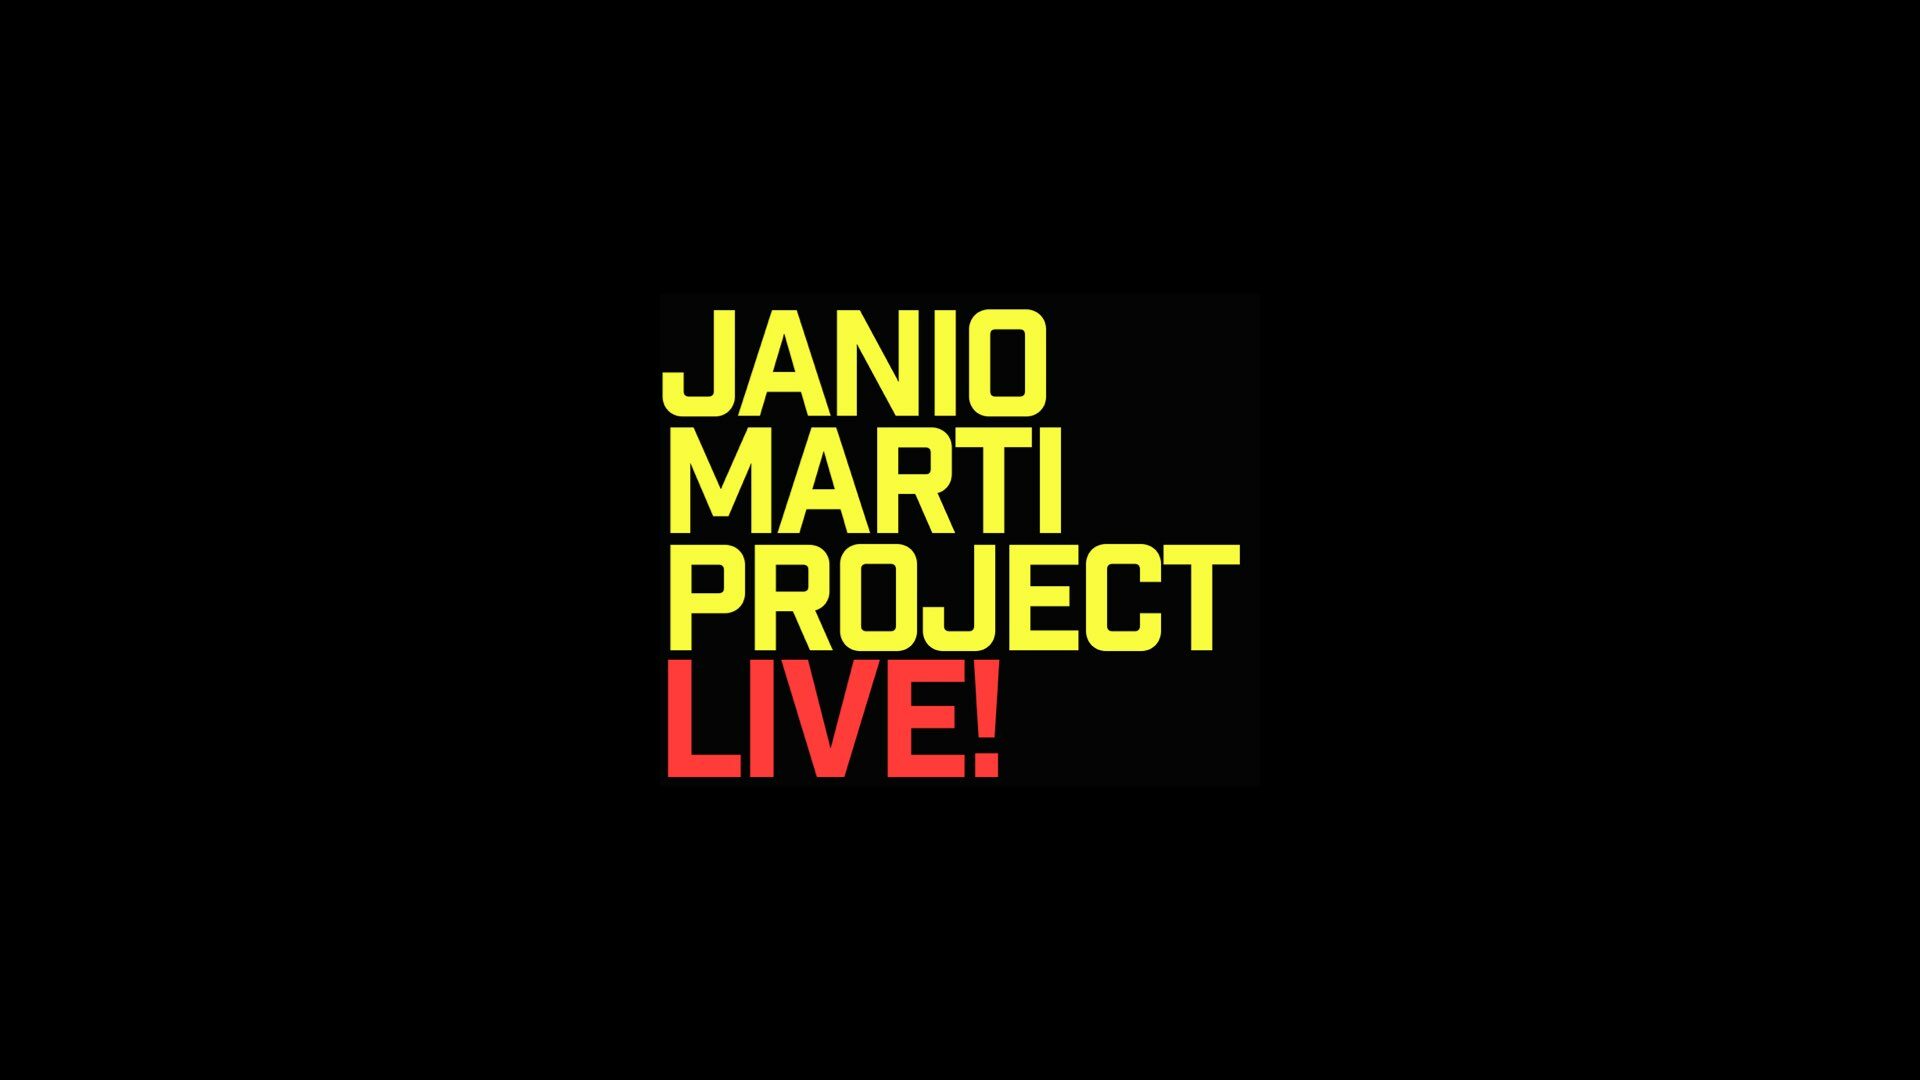 Janio Marti Project